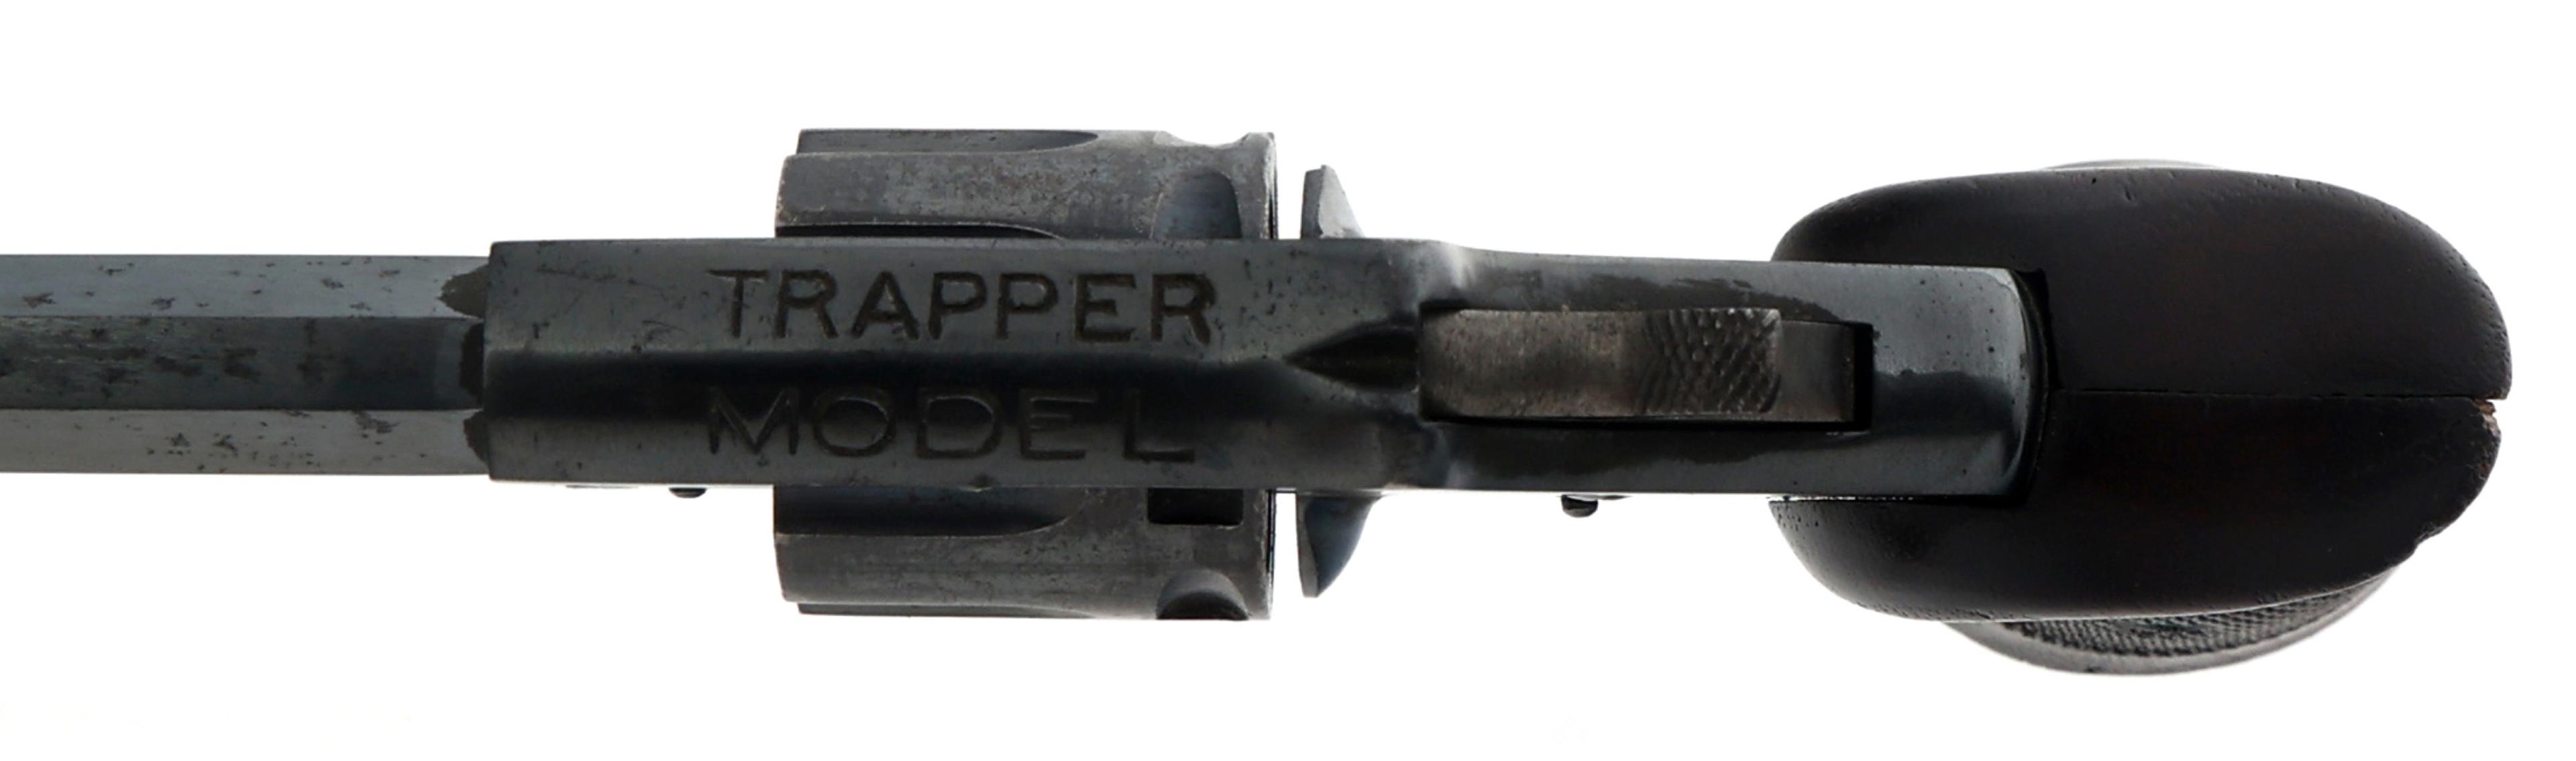 H&R TRAPPER MODEL 22 RIM FIRE CALIBER REVOLVER